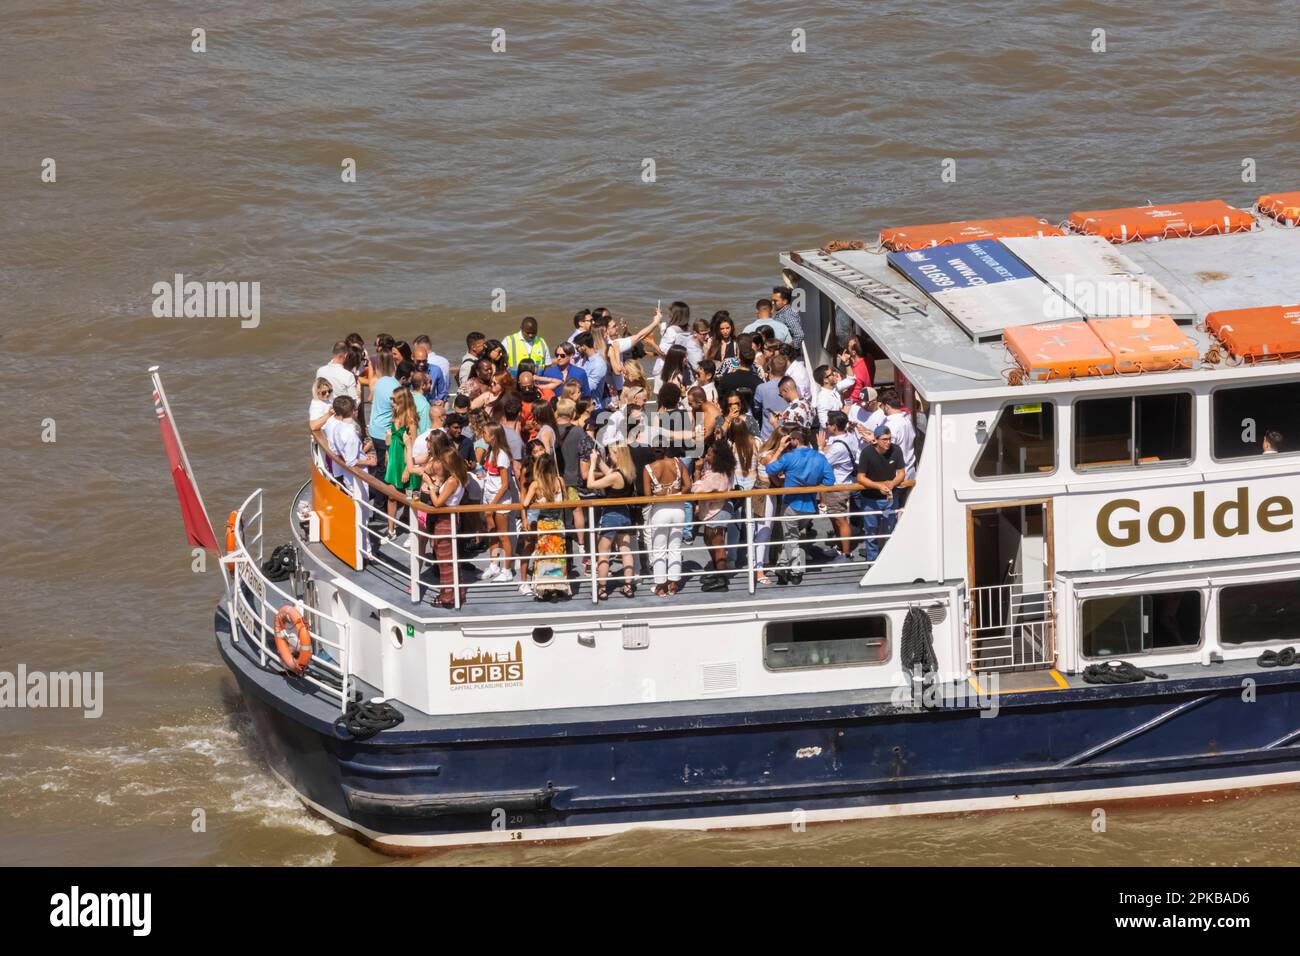 England, London, eine große Menge Partybesucher auf dem Tourboot auf der Themse Stockfoto